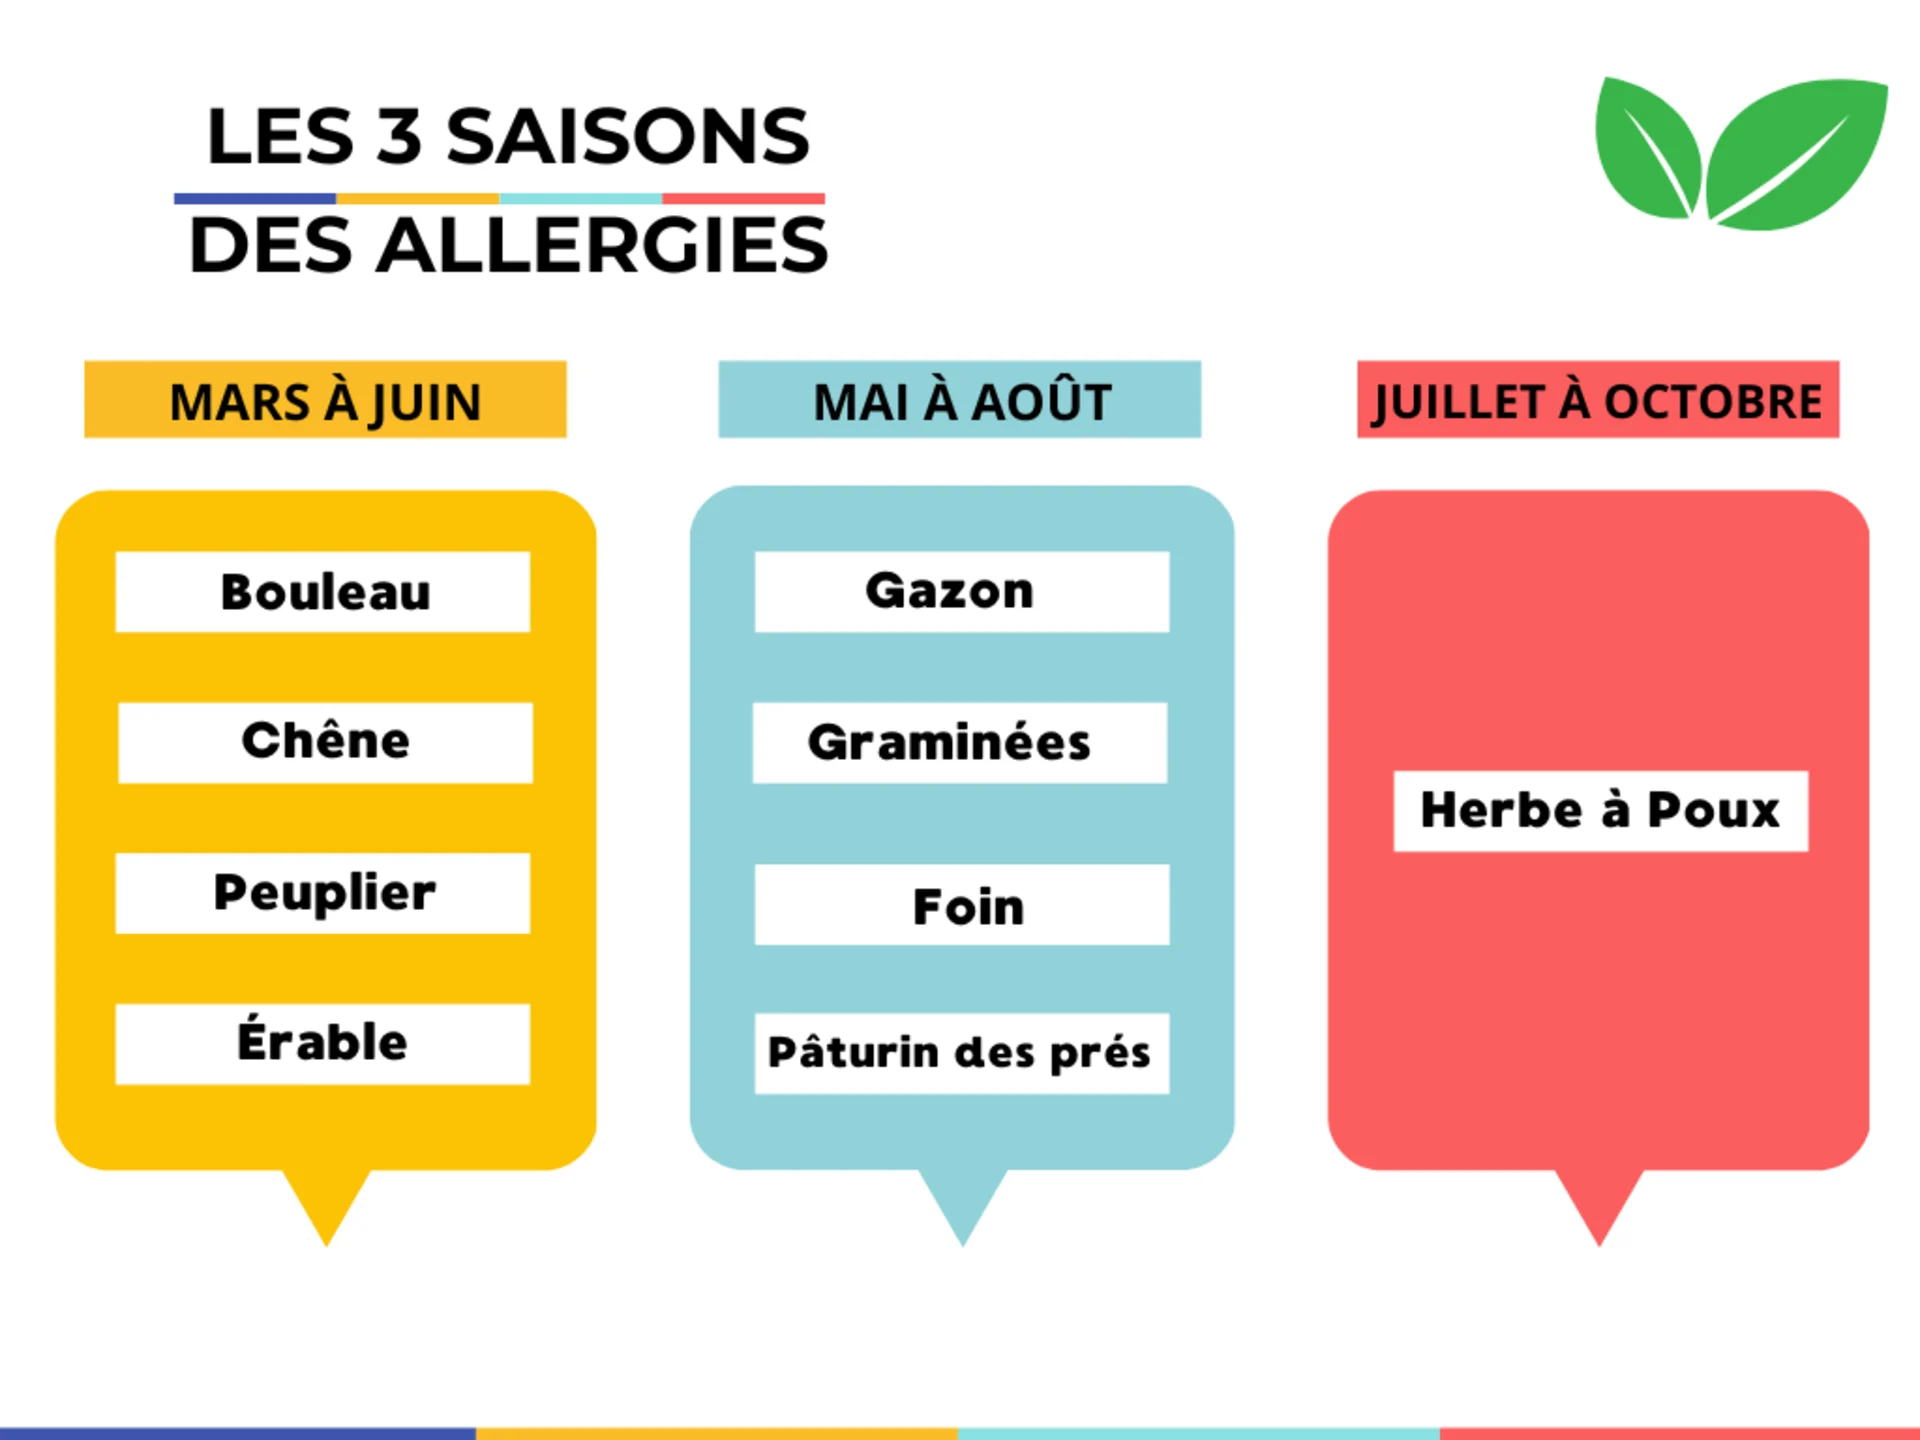 Les 3 saisons des allergies